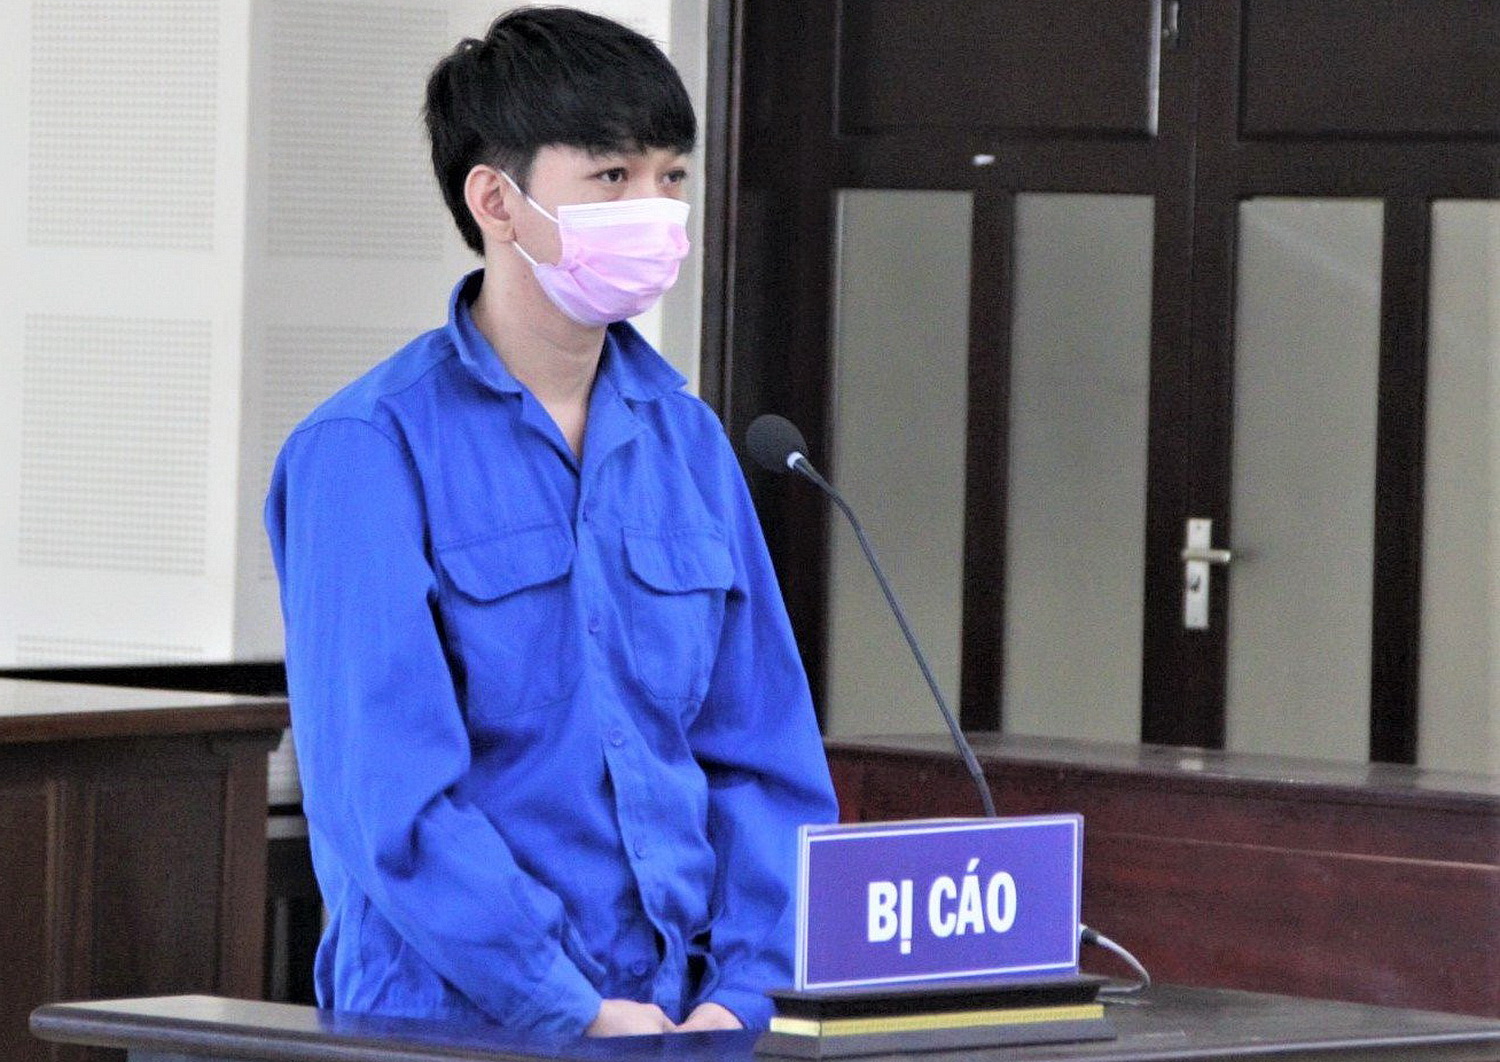 Đà Nẵng: Thanh niên lĩnh 14 năm tù về tội làm giả giấy tờ xe ô tô để lừa đảo - Ảnh 1.